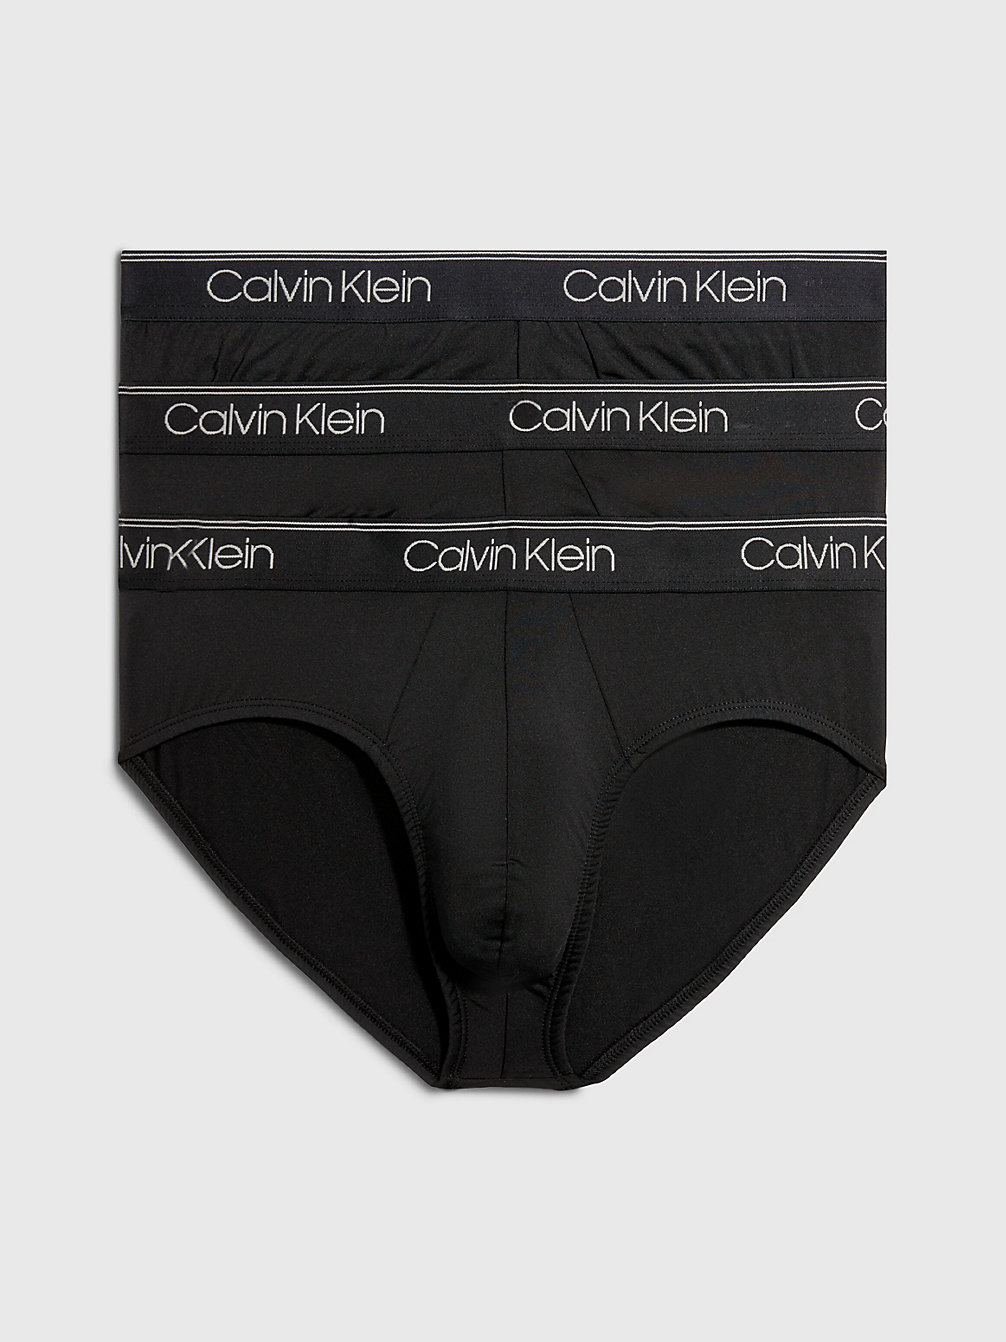 BLACK > Zestaw 3 Par Niskich Slipów - Micro Stretch Wicking > undefined Mężczyźni - Calvin Klein